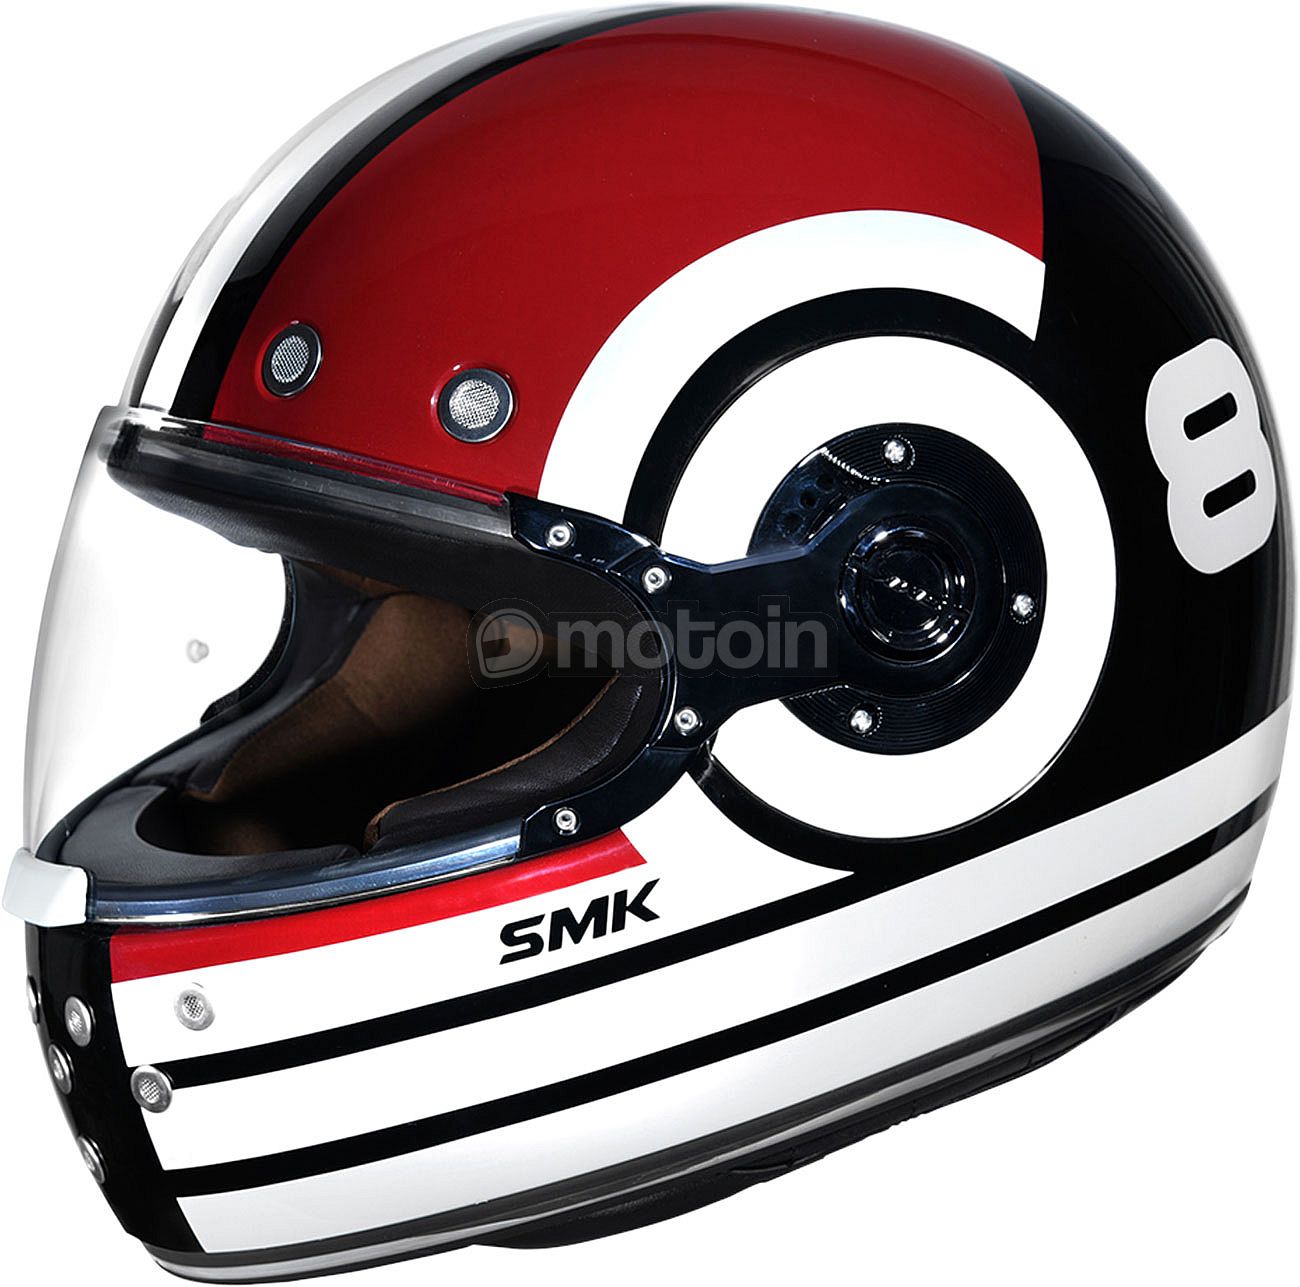 SMK Retro Ranko, integral helmet 